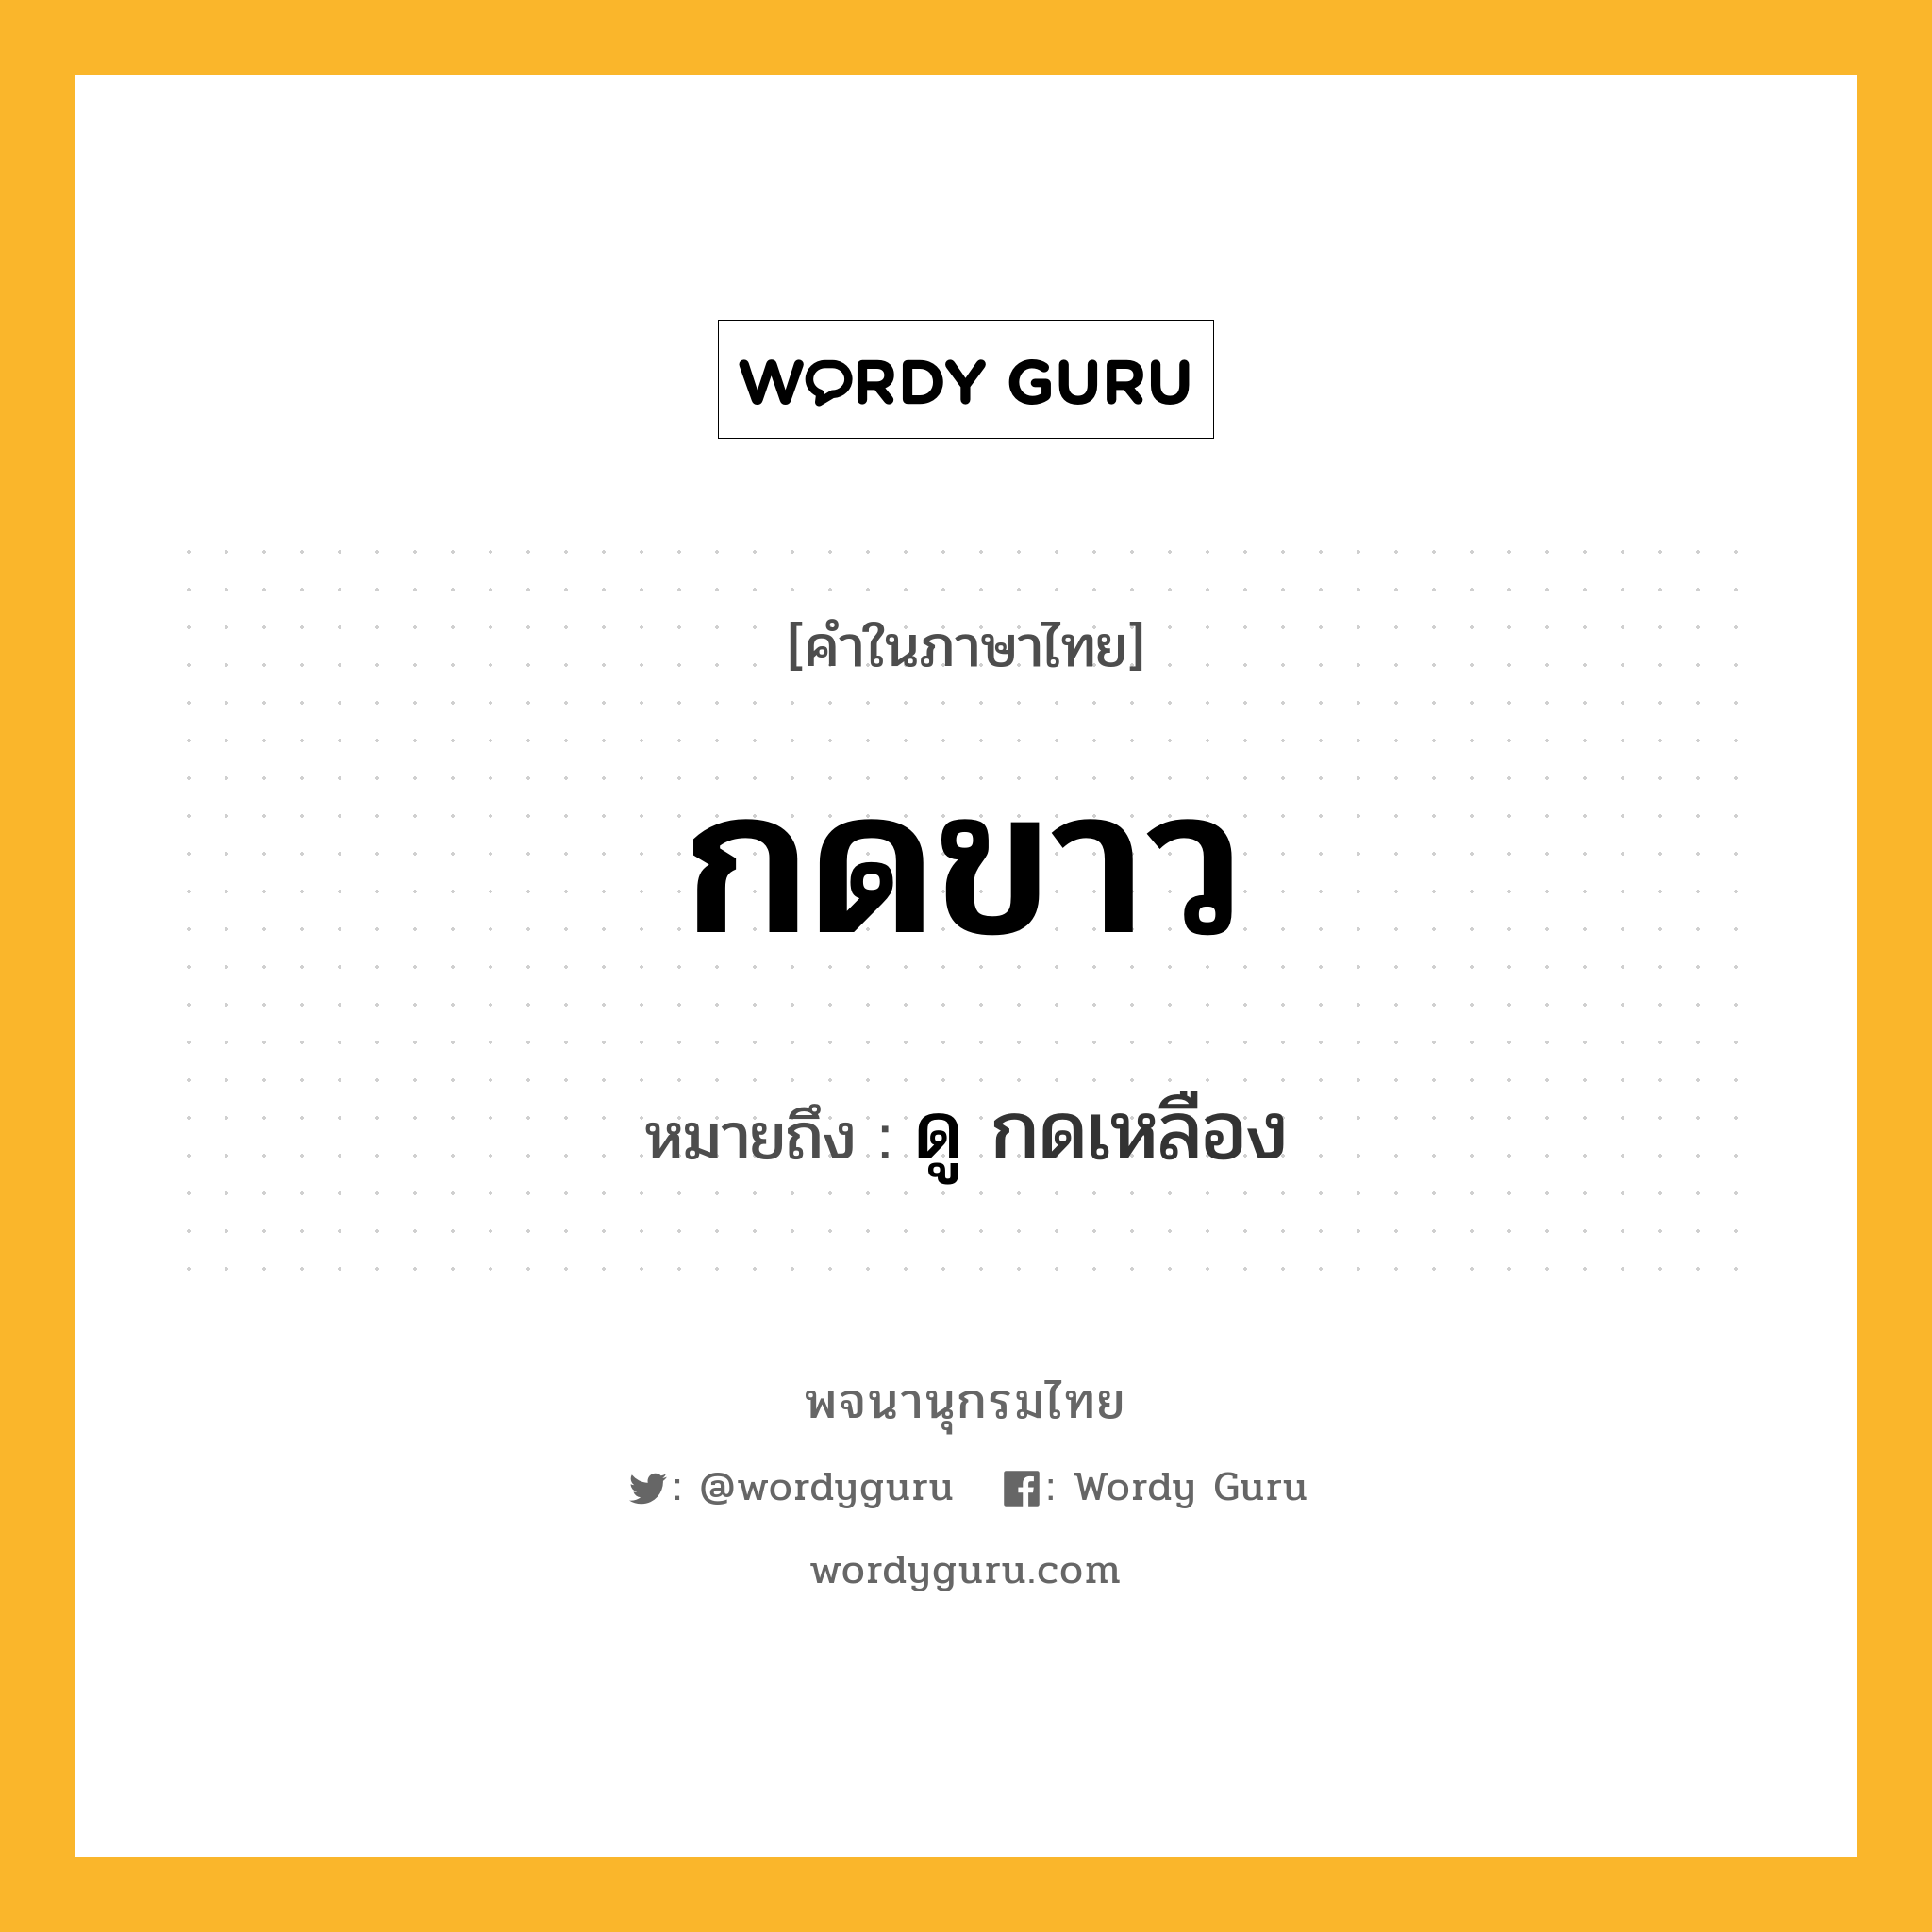 กดขาว ความหมาย หมายถึงอะไร?, คำในภาษาไทย กดขาว หมายถึง ดู กดเหลือง